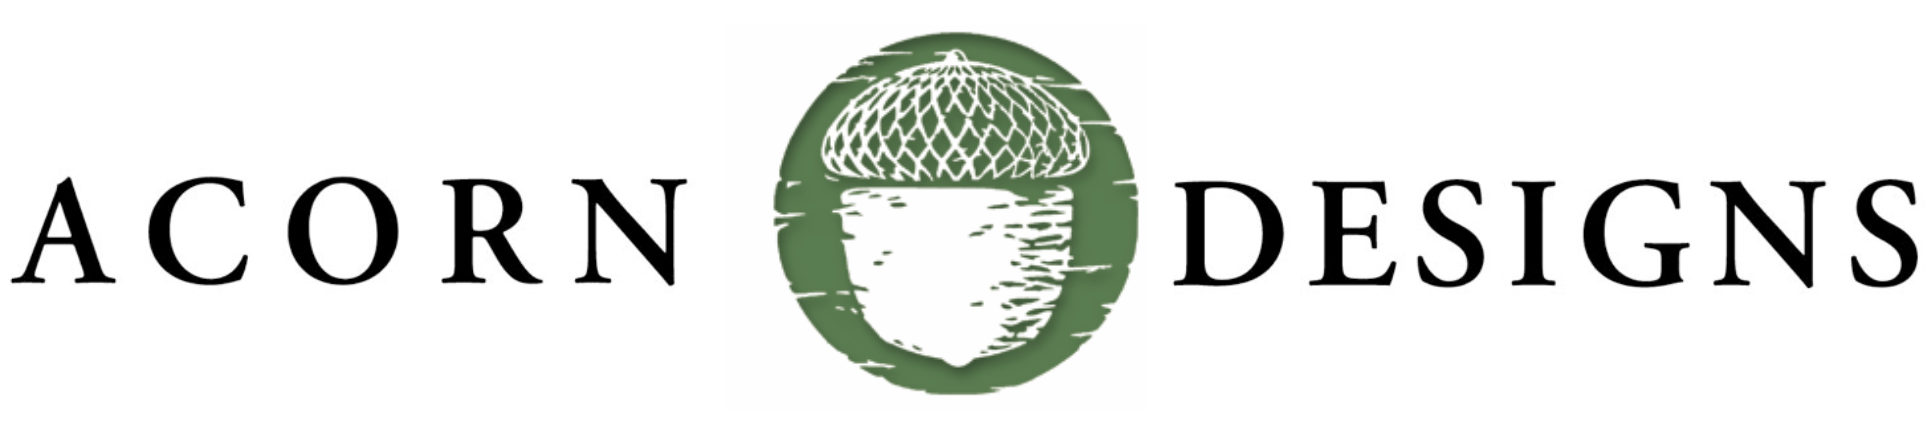 Acorn Header Logo green - small